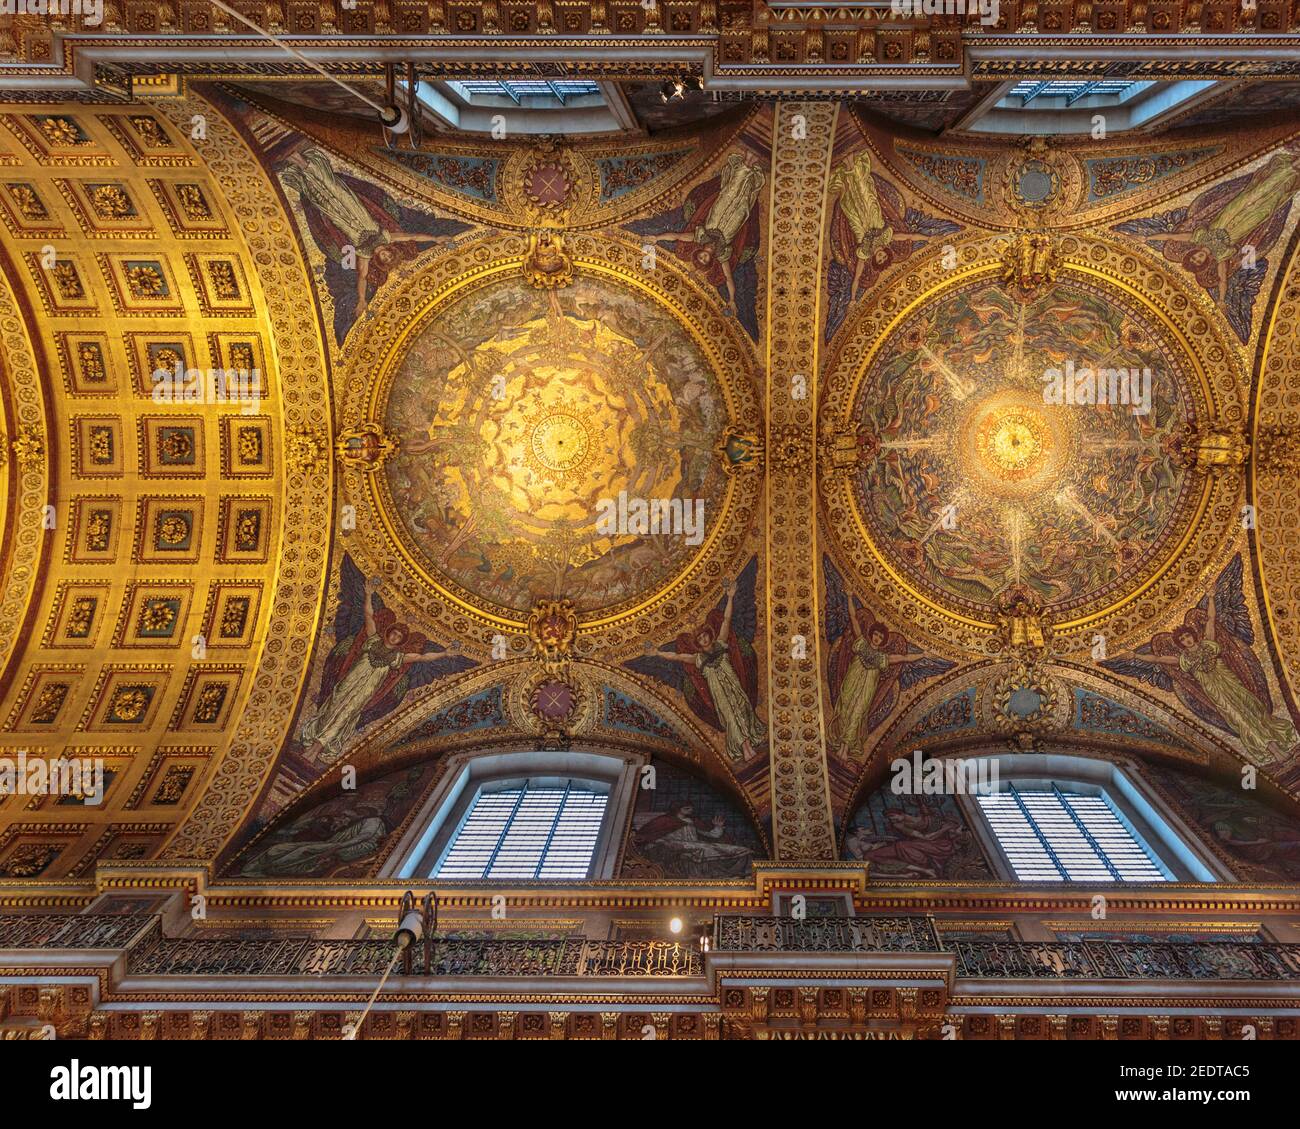 Die Quire Decke, St. Paul's Cathedral Innenraum, Blick bis zu den Wandmalereien, Schnitzereien und vergoldeten Dekorationen, London, England, Großbritannien Stockfoto